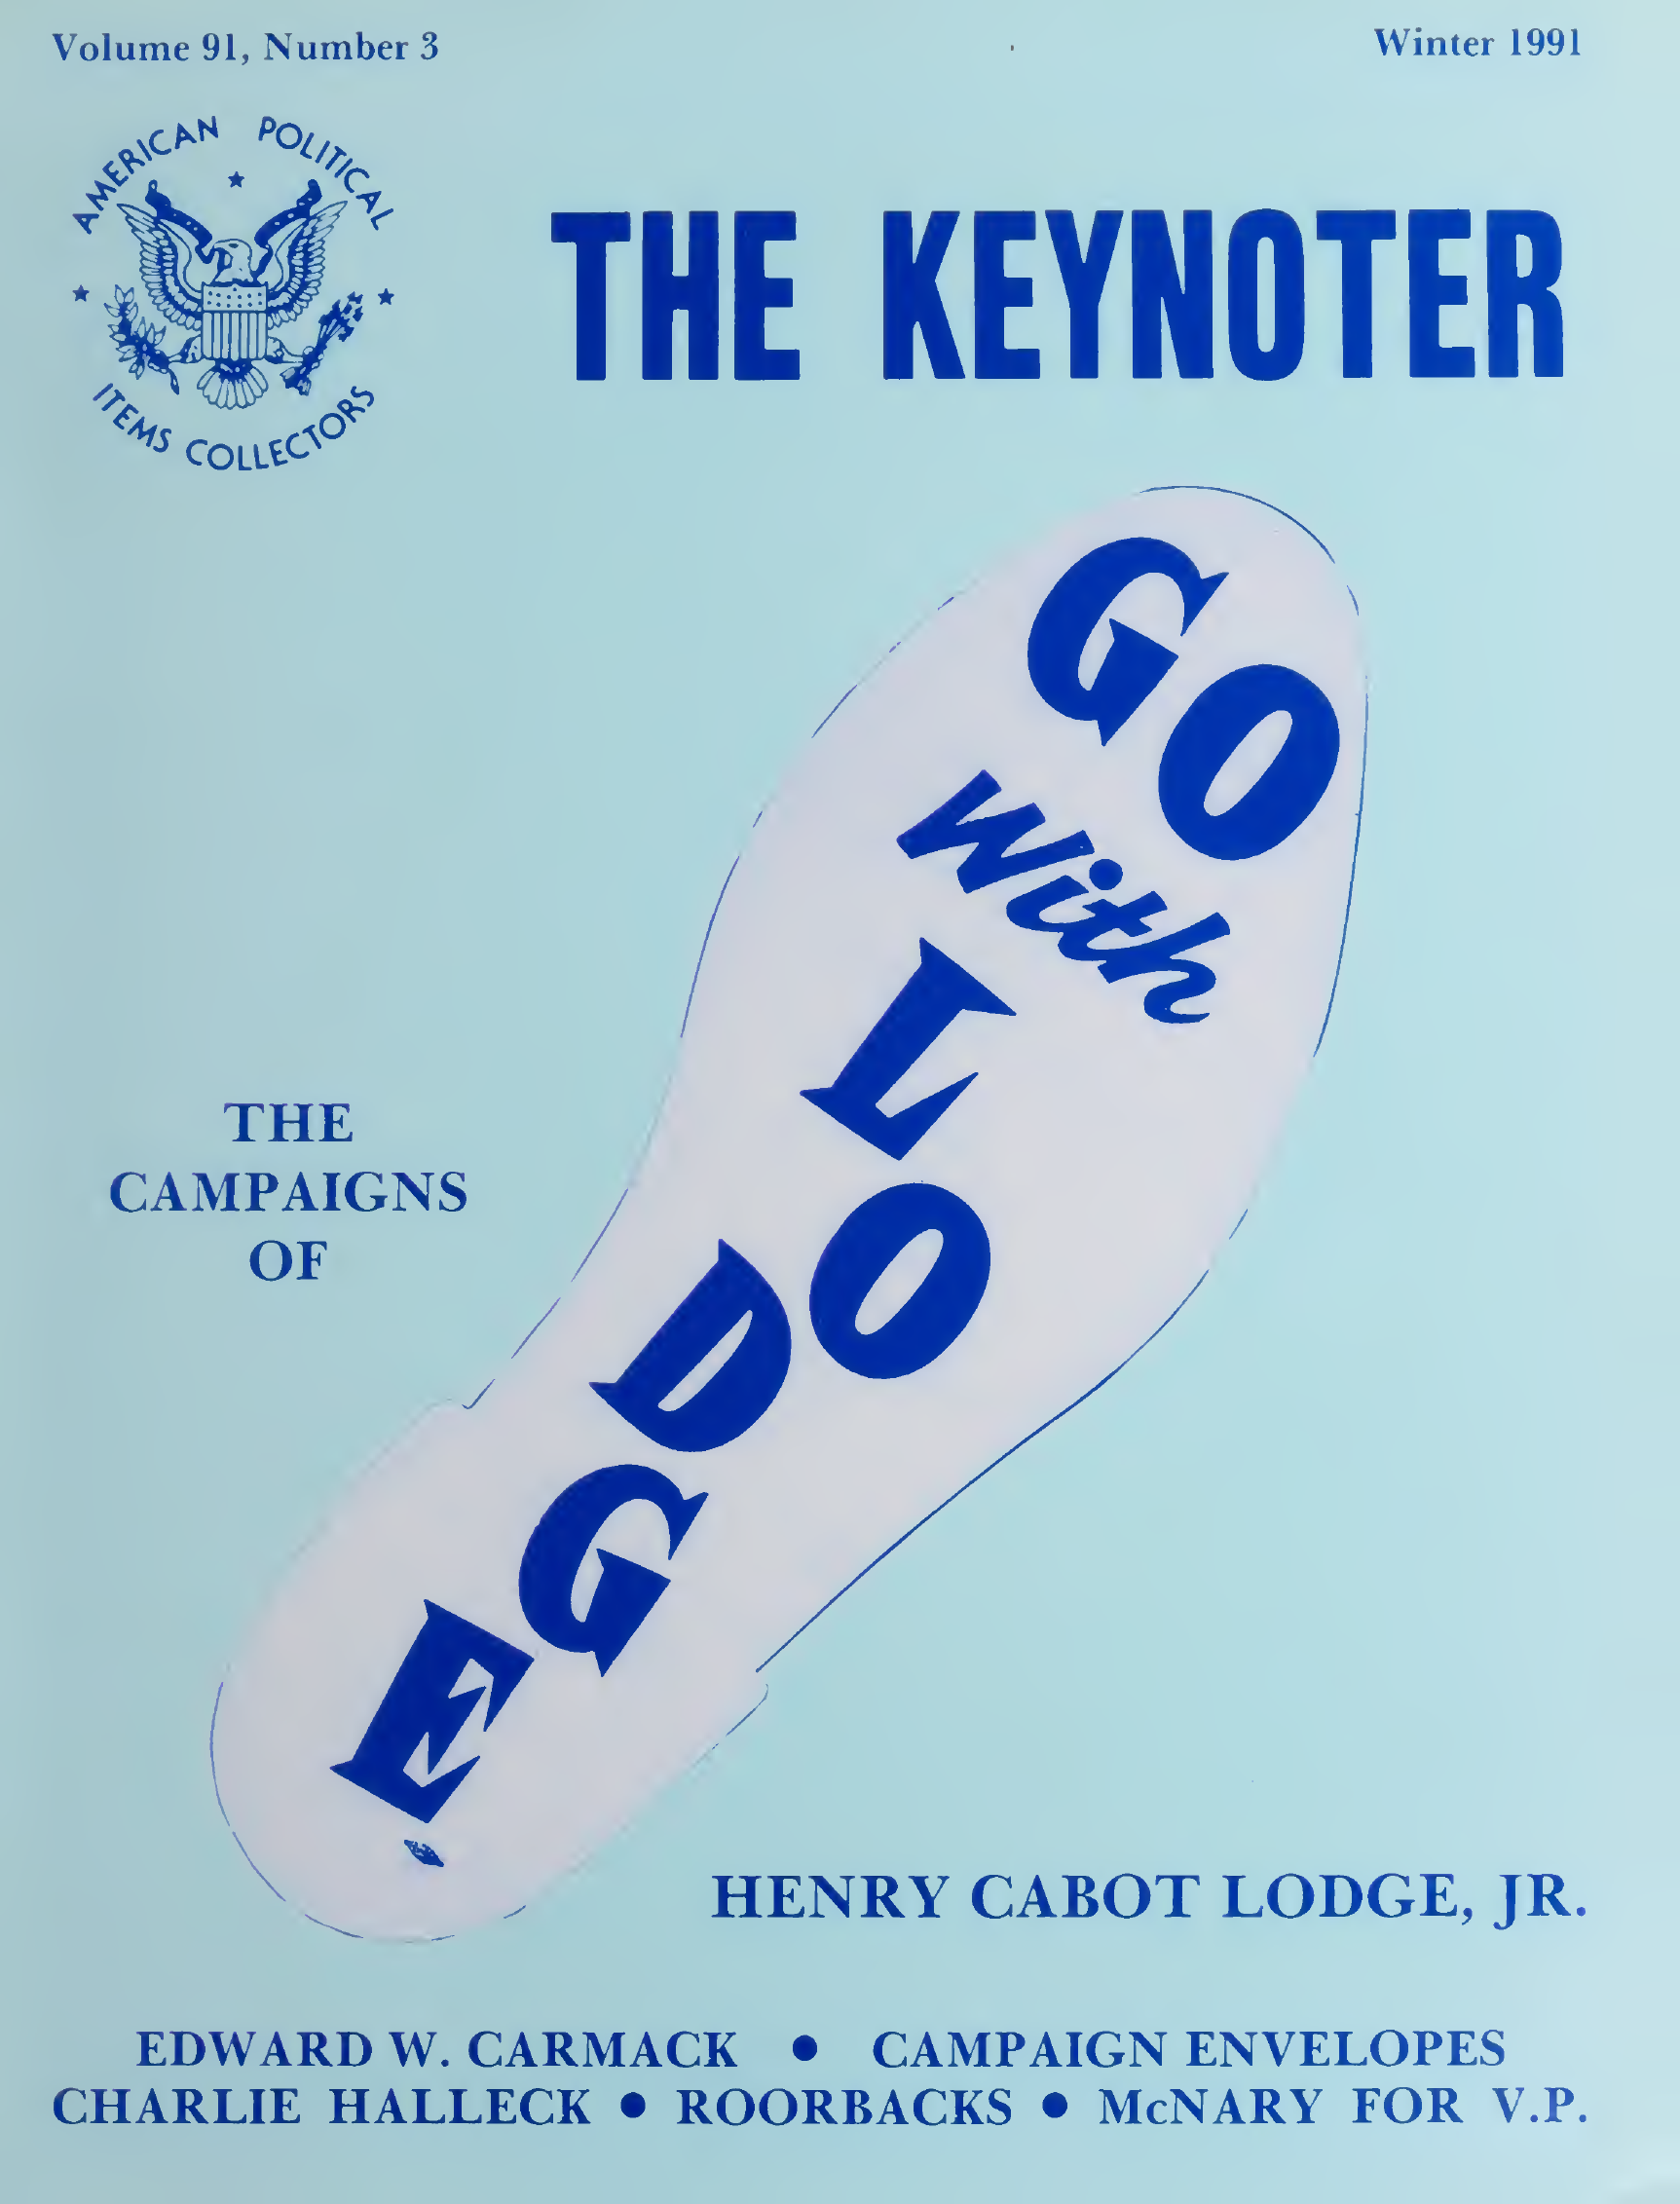 Keynoter 1991 - Winter - Issue 3